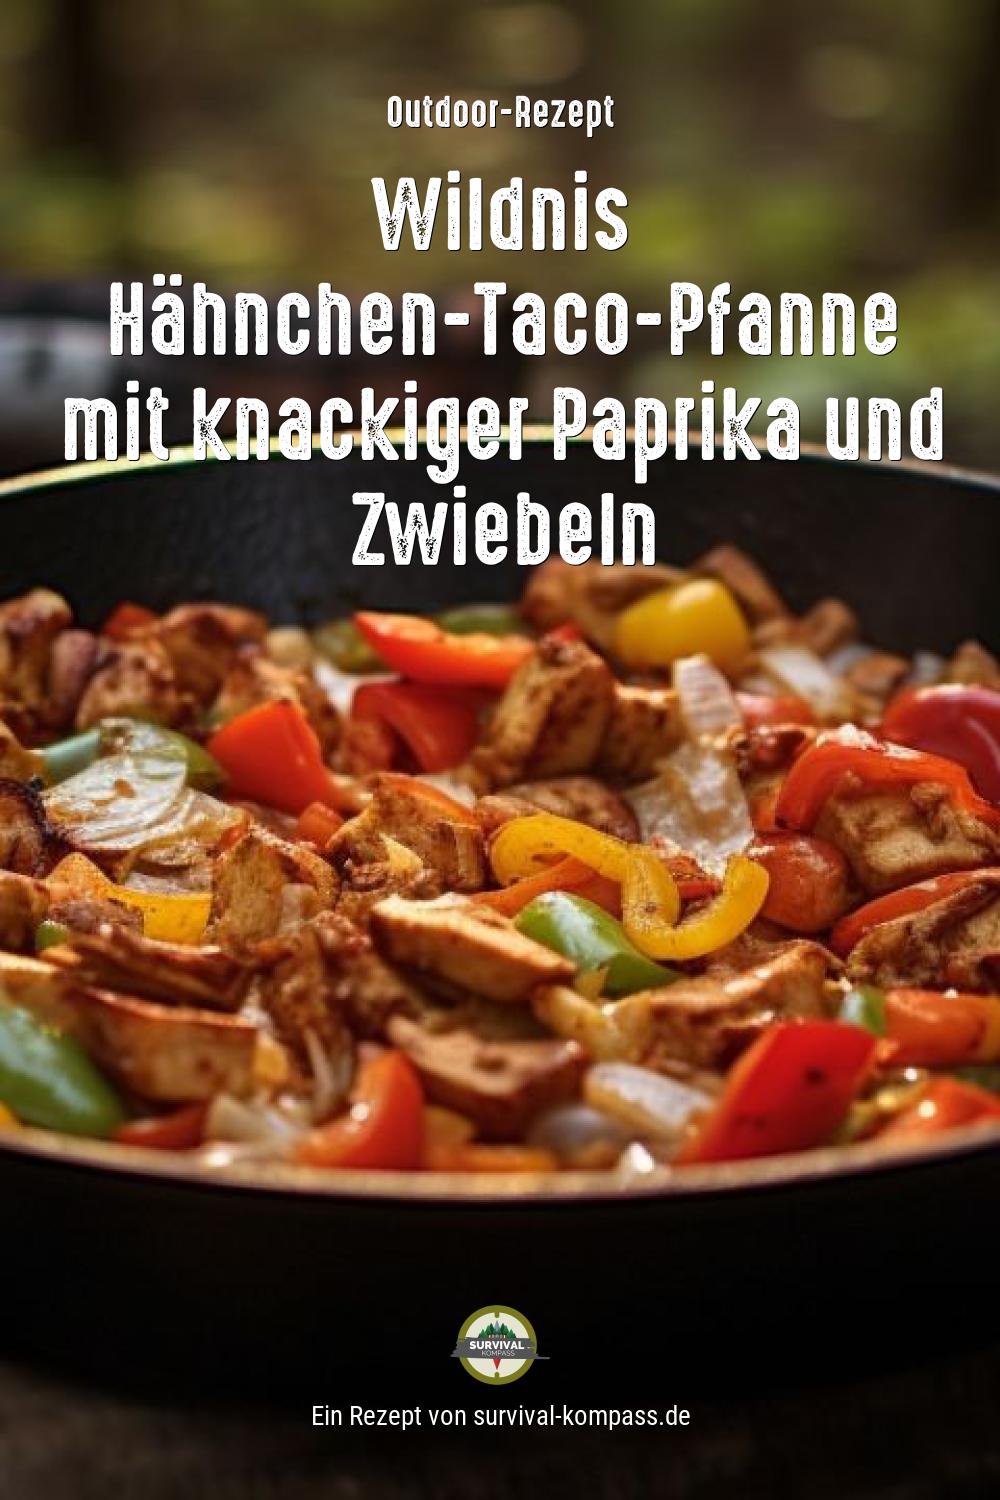 Wildnis Hähnchen-Taco-Pfanne mit knackiger Paprika und Zwiebeln